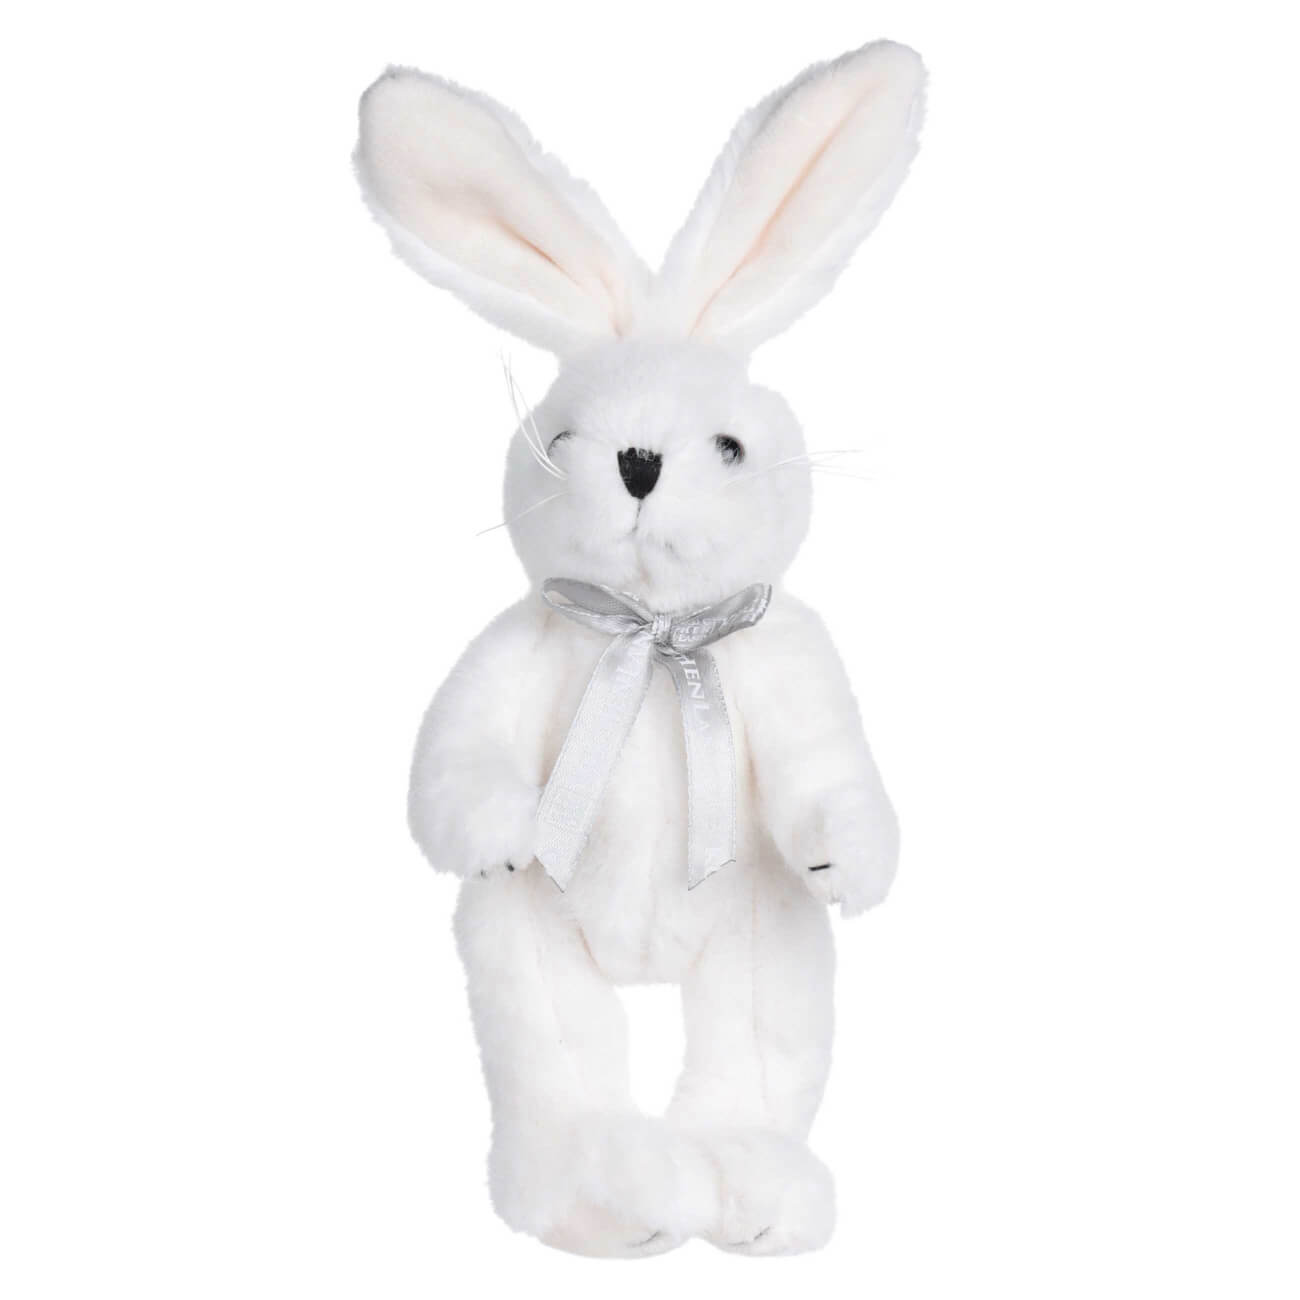 Игрушка, 20 см, мягкая, с подвижными лапами, полиэстер, белая, Кролик, Rabbit toy игрушка 20 см мягкая с подвижными лапами полиэстер белая кролик rabbit toy